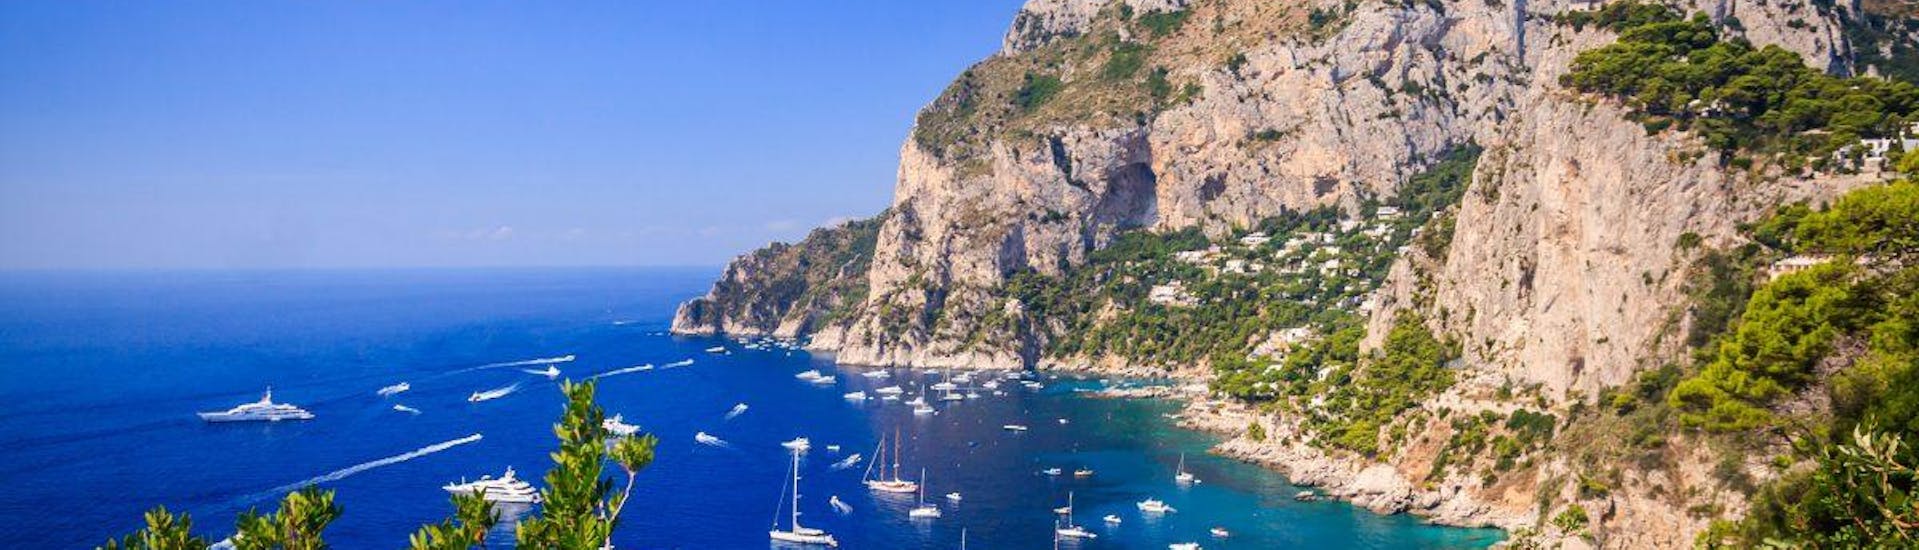 Paseo en barco desde Torre del Greco y Ercolano a Capri.